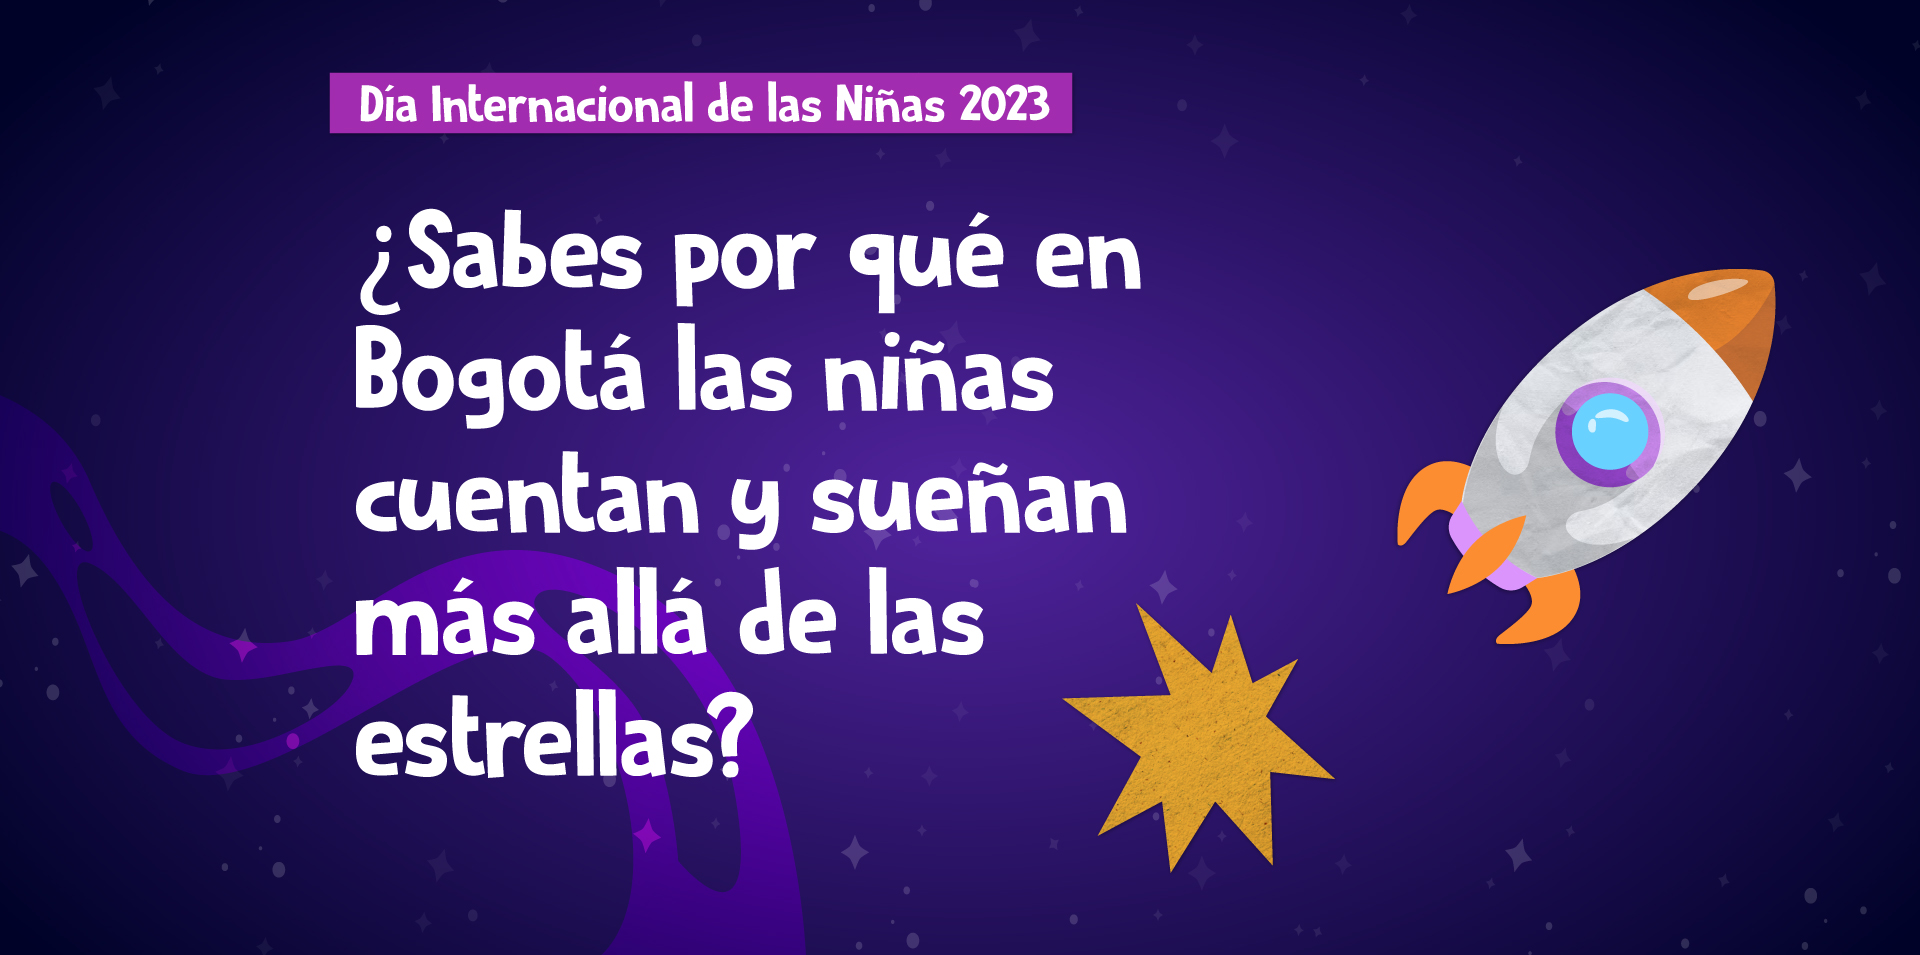 ¿Sabes por qué en Bogotá las niñas cuentan y sueñan más allá de las estrellas?